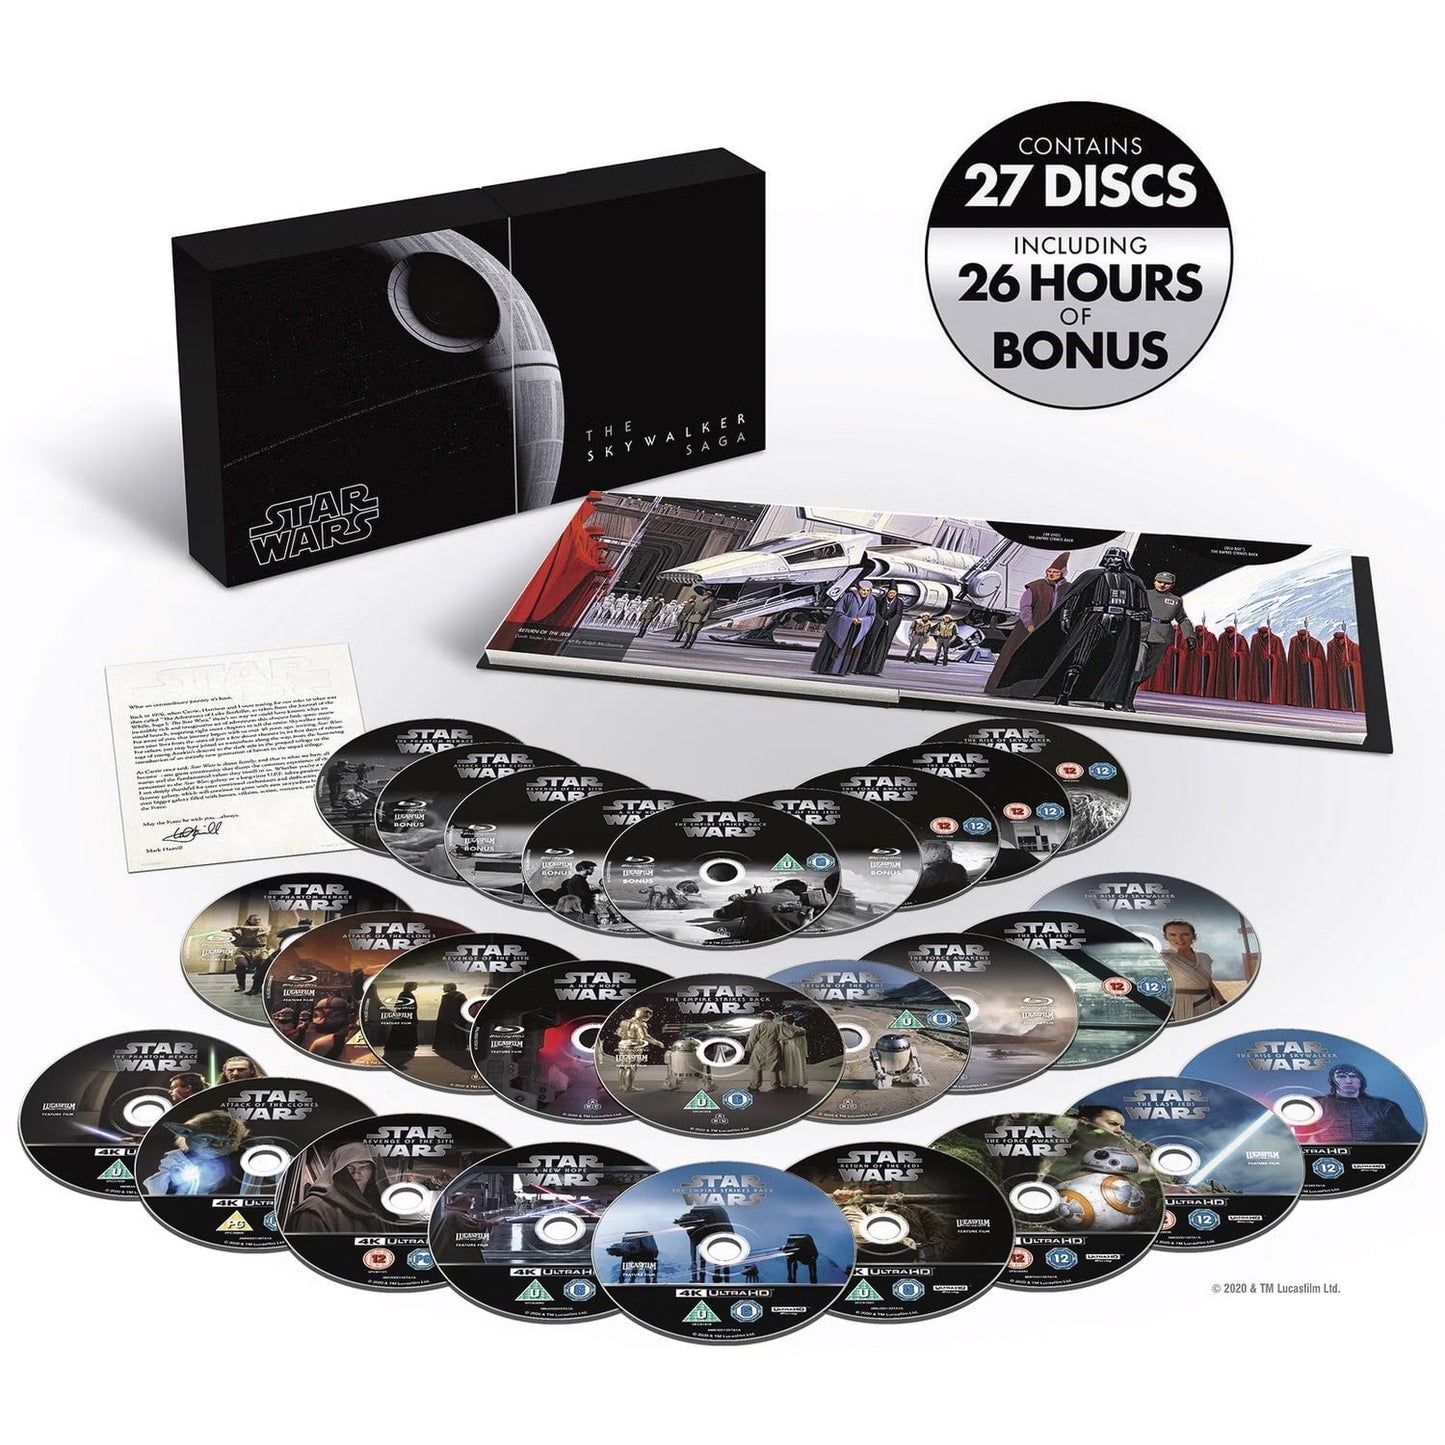 Звездные войны: Сага о Скайуокерах (Star Wars: The Skywalker Saga) (англ. язык) (4K UHD + Blu-ray) Complete Box Set